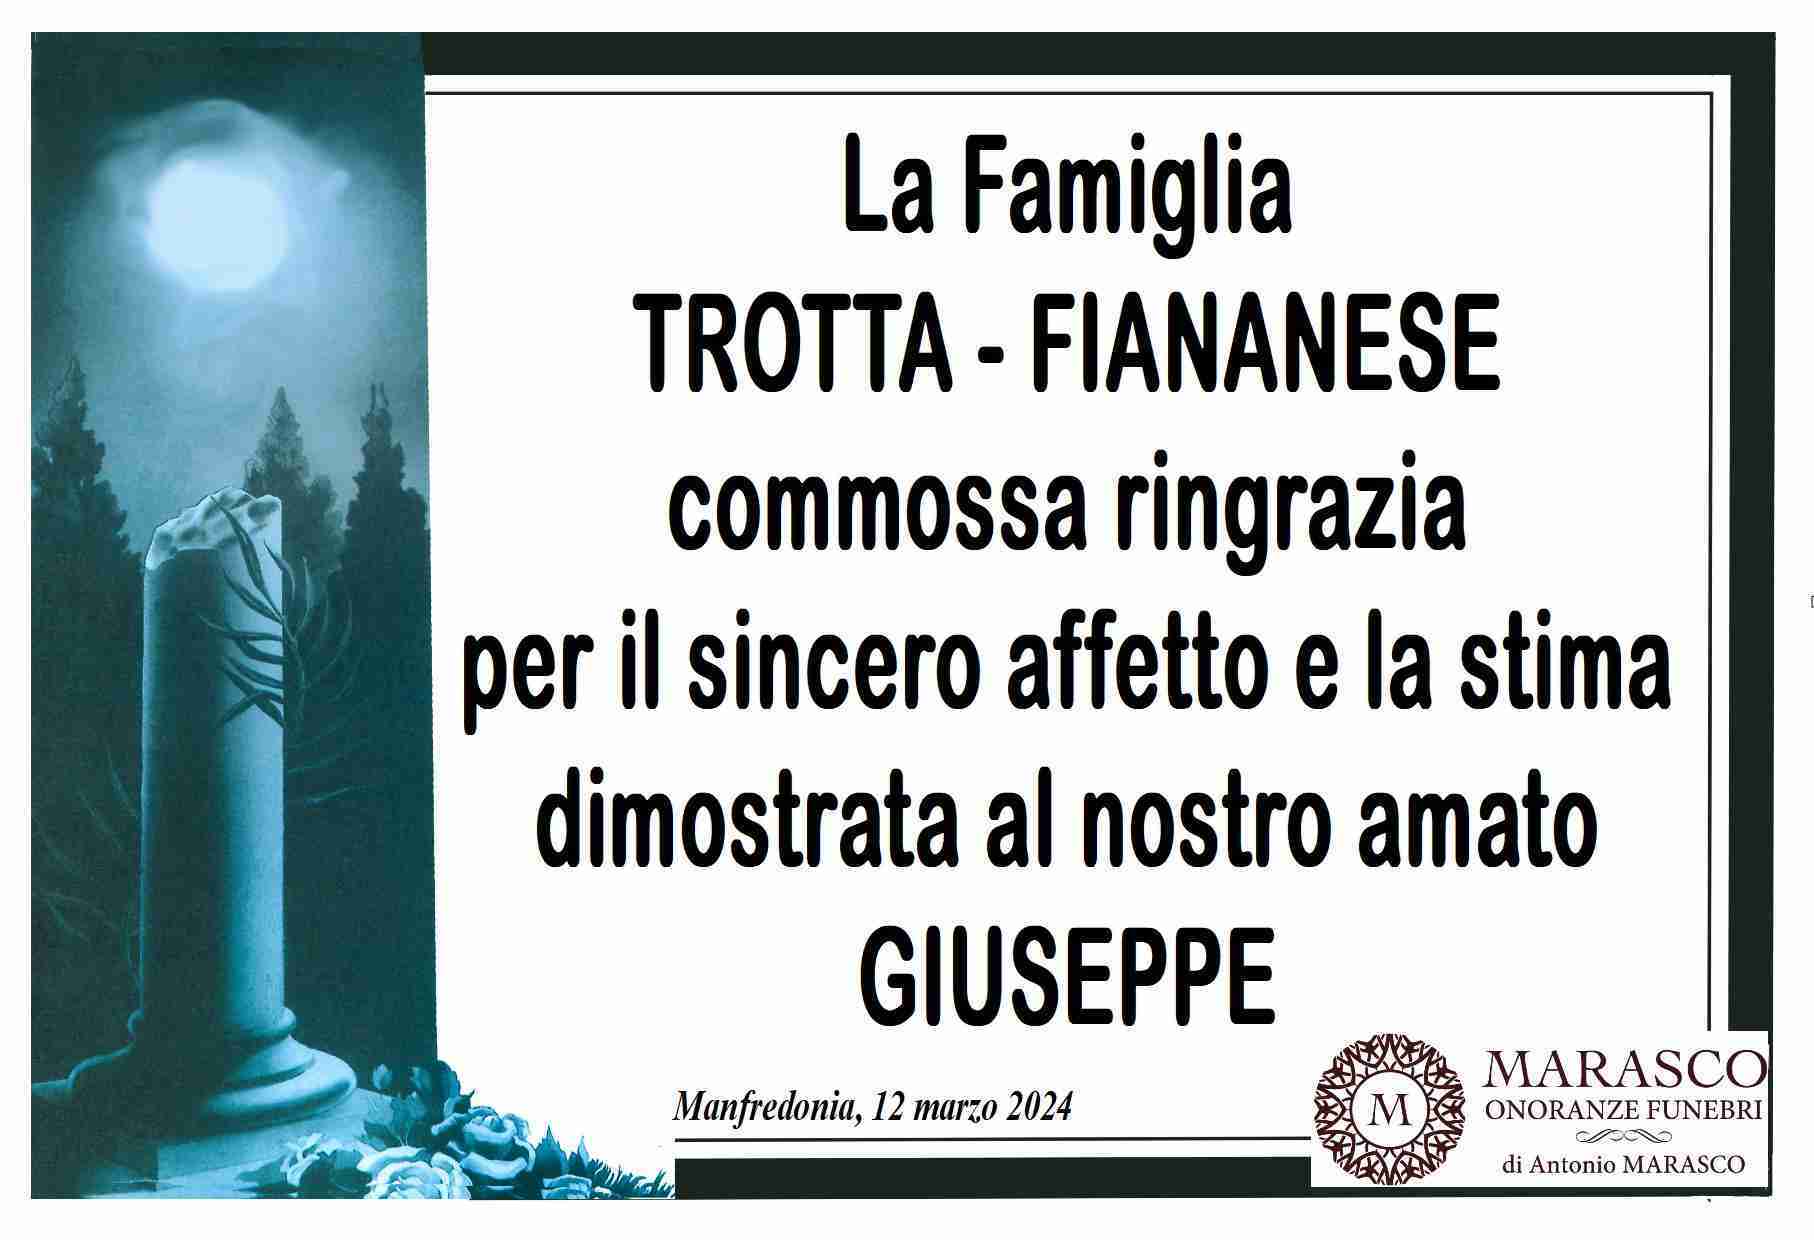 Giuseppe Trotta